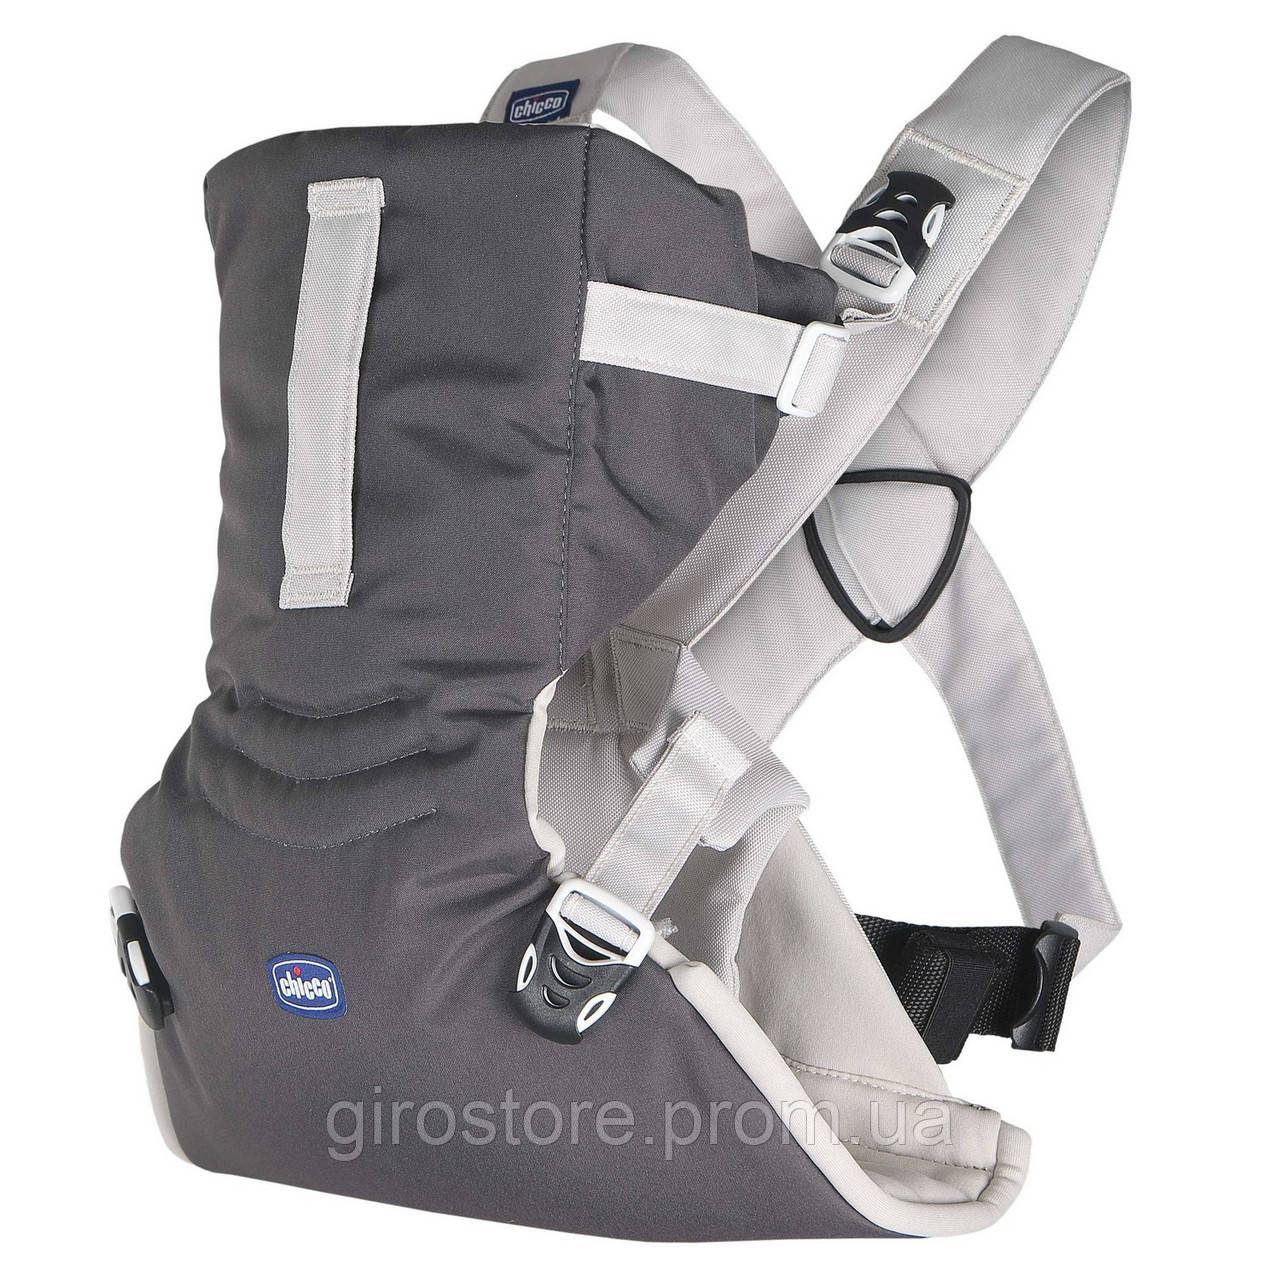 Ерго рюкзак-кенгуру Chicco Easy Fit сірий, для новонароджених, нагрудна переноска для дитини.